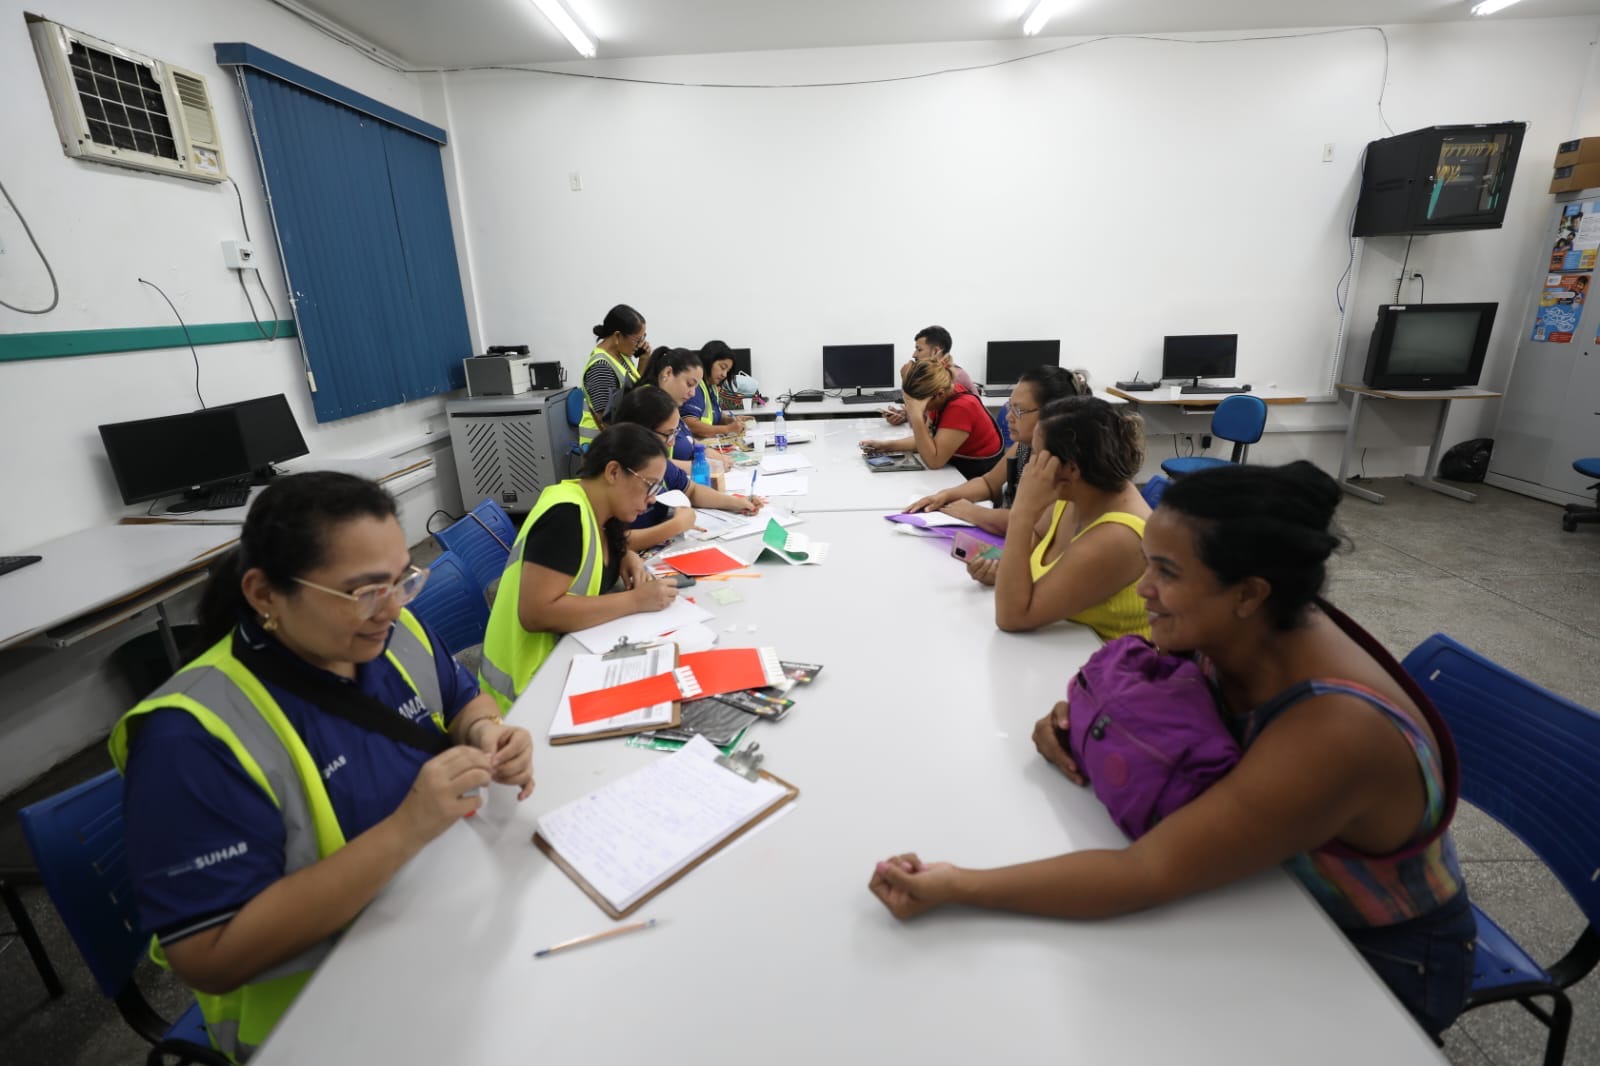 Governo antecipará reassentamento de moradores das comunidades da Sharp e Manaus 2000 com bolsa moradia transitória